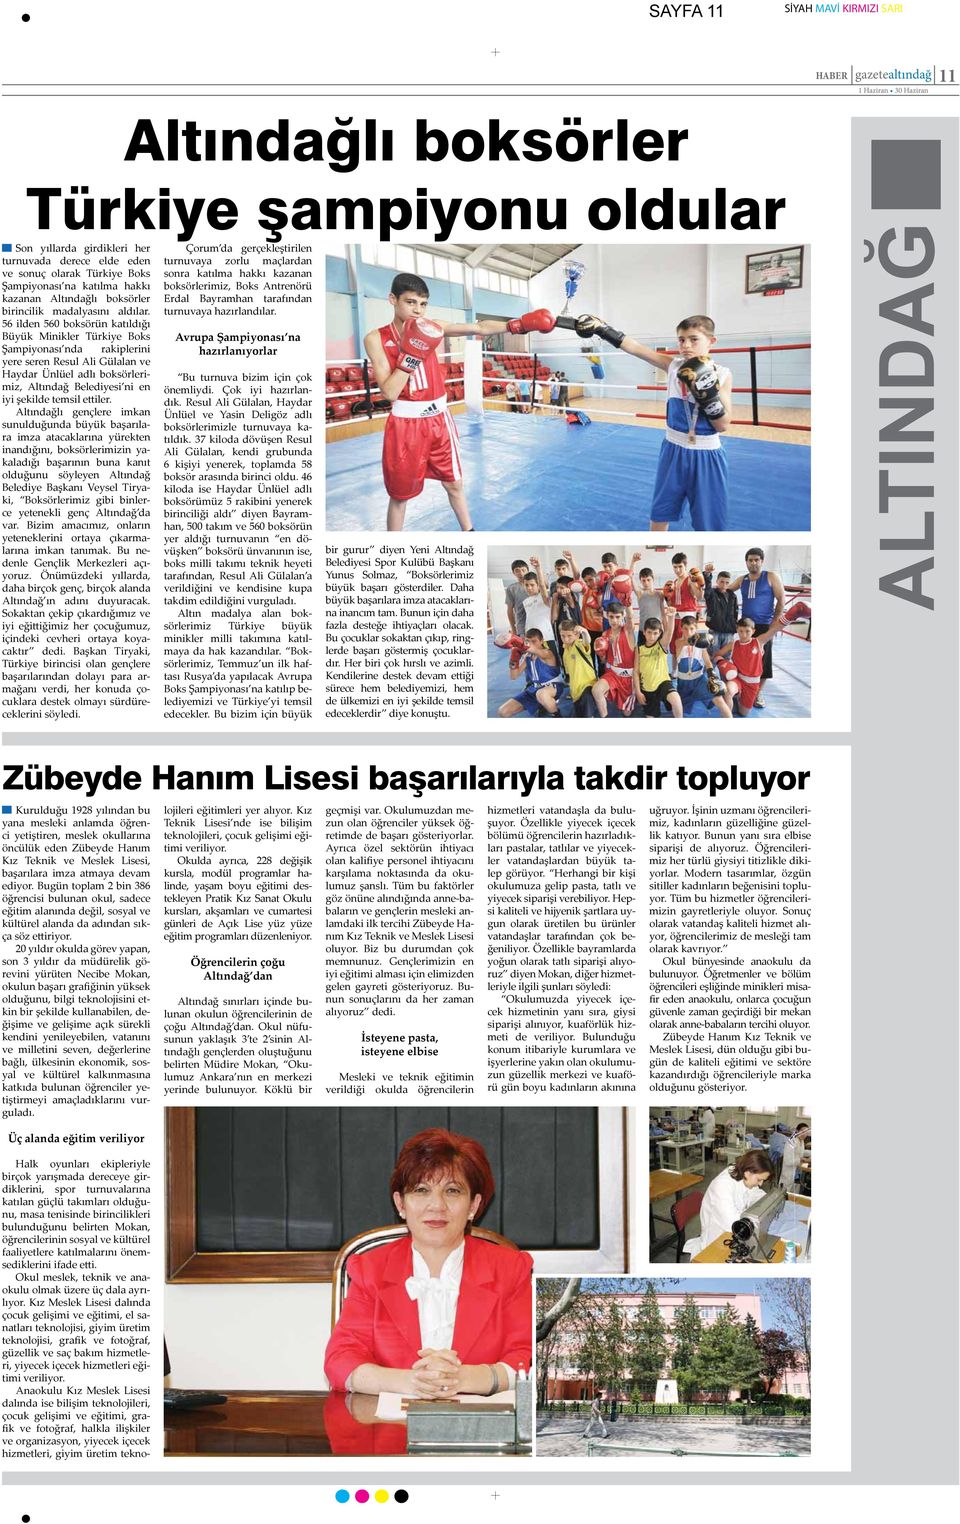 56 ilden 560 boksörün katıldığı Büyük Minikler Türkiye Boks Şampiyonası nda rakiplerini yere seren Resul Ali Gülalan ve Haydar Ünlüel adlı boksörlerimiz, Altındağ Belediyesi ni en iyi şekilde temsil